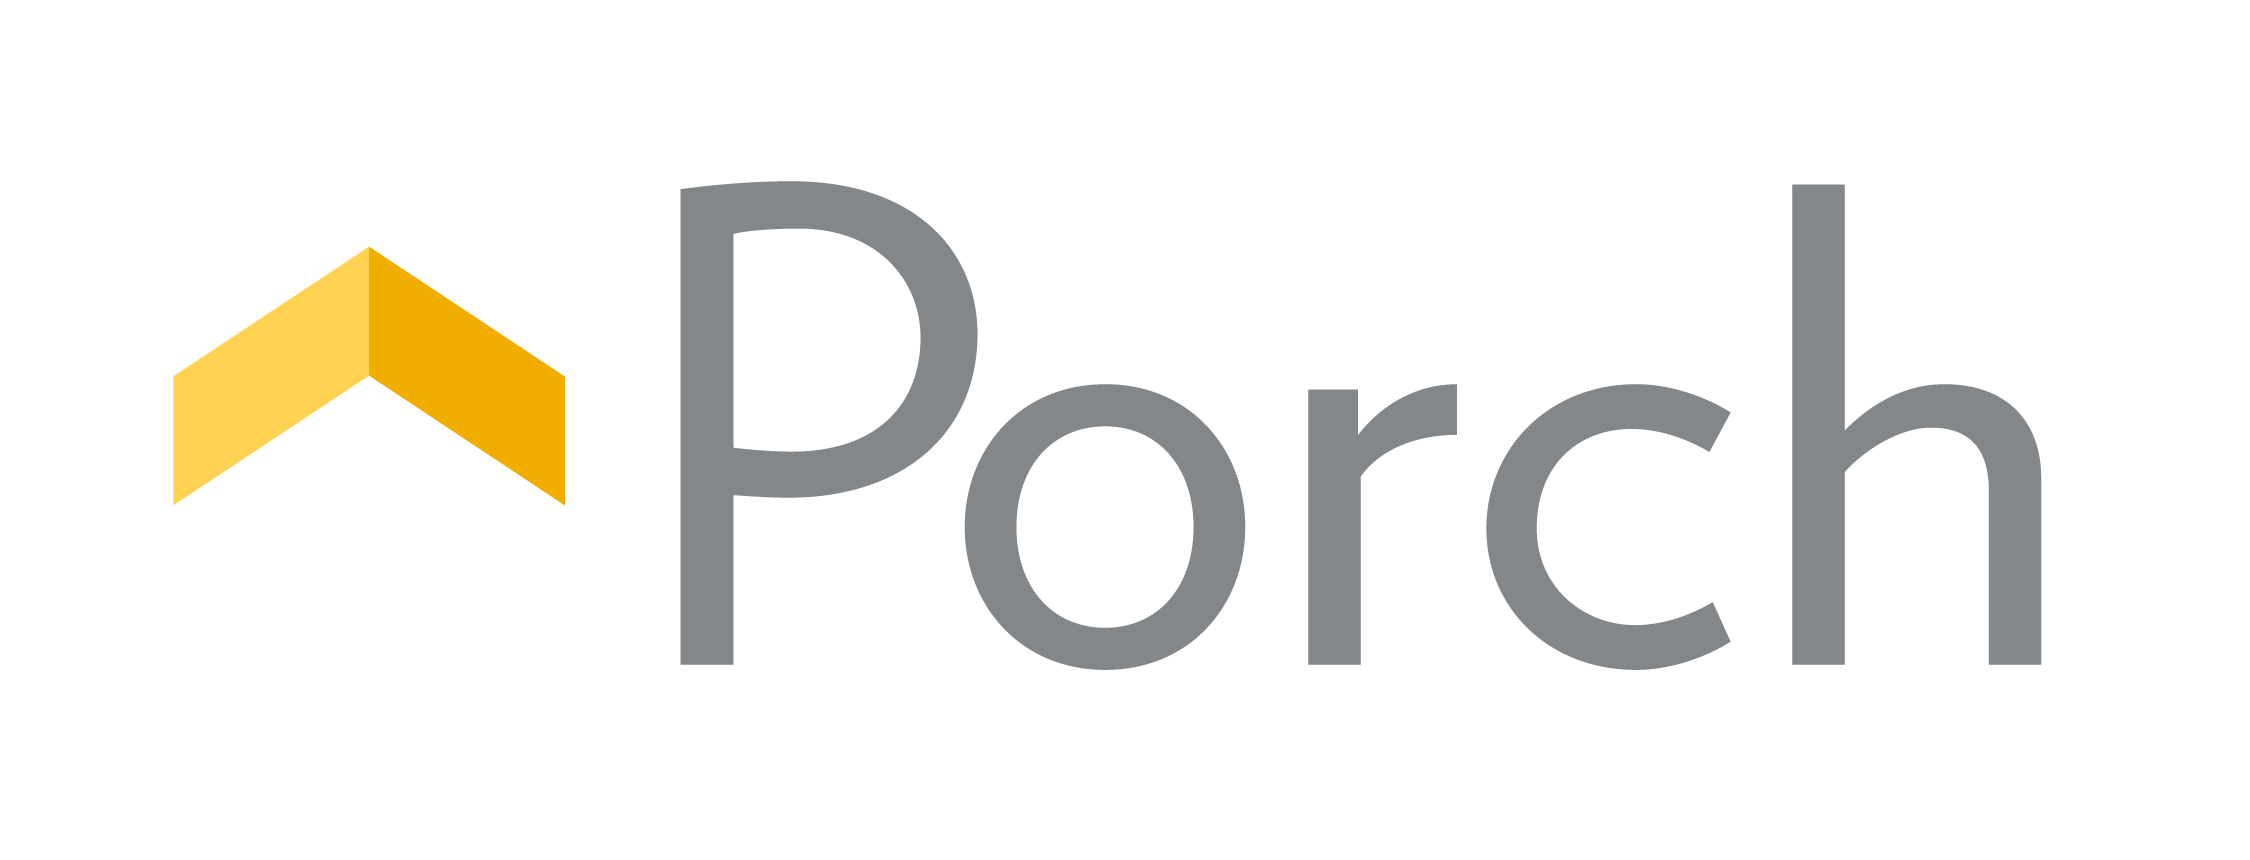 Porch Logo rectangle